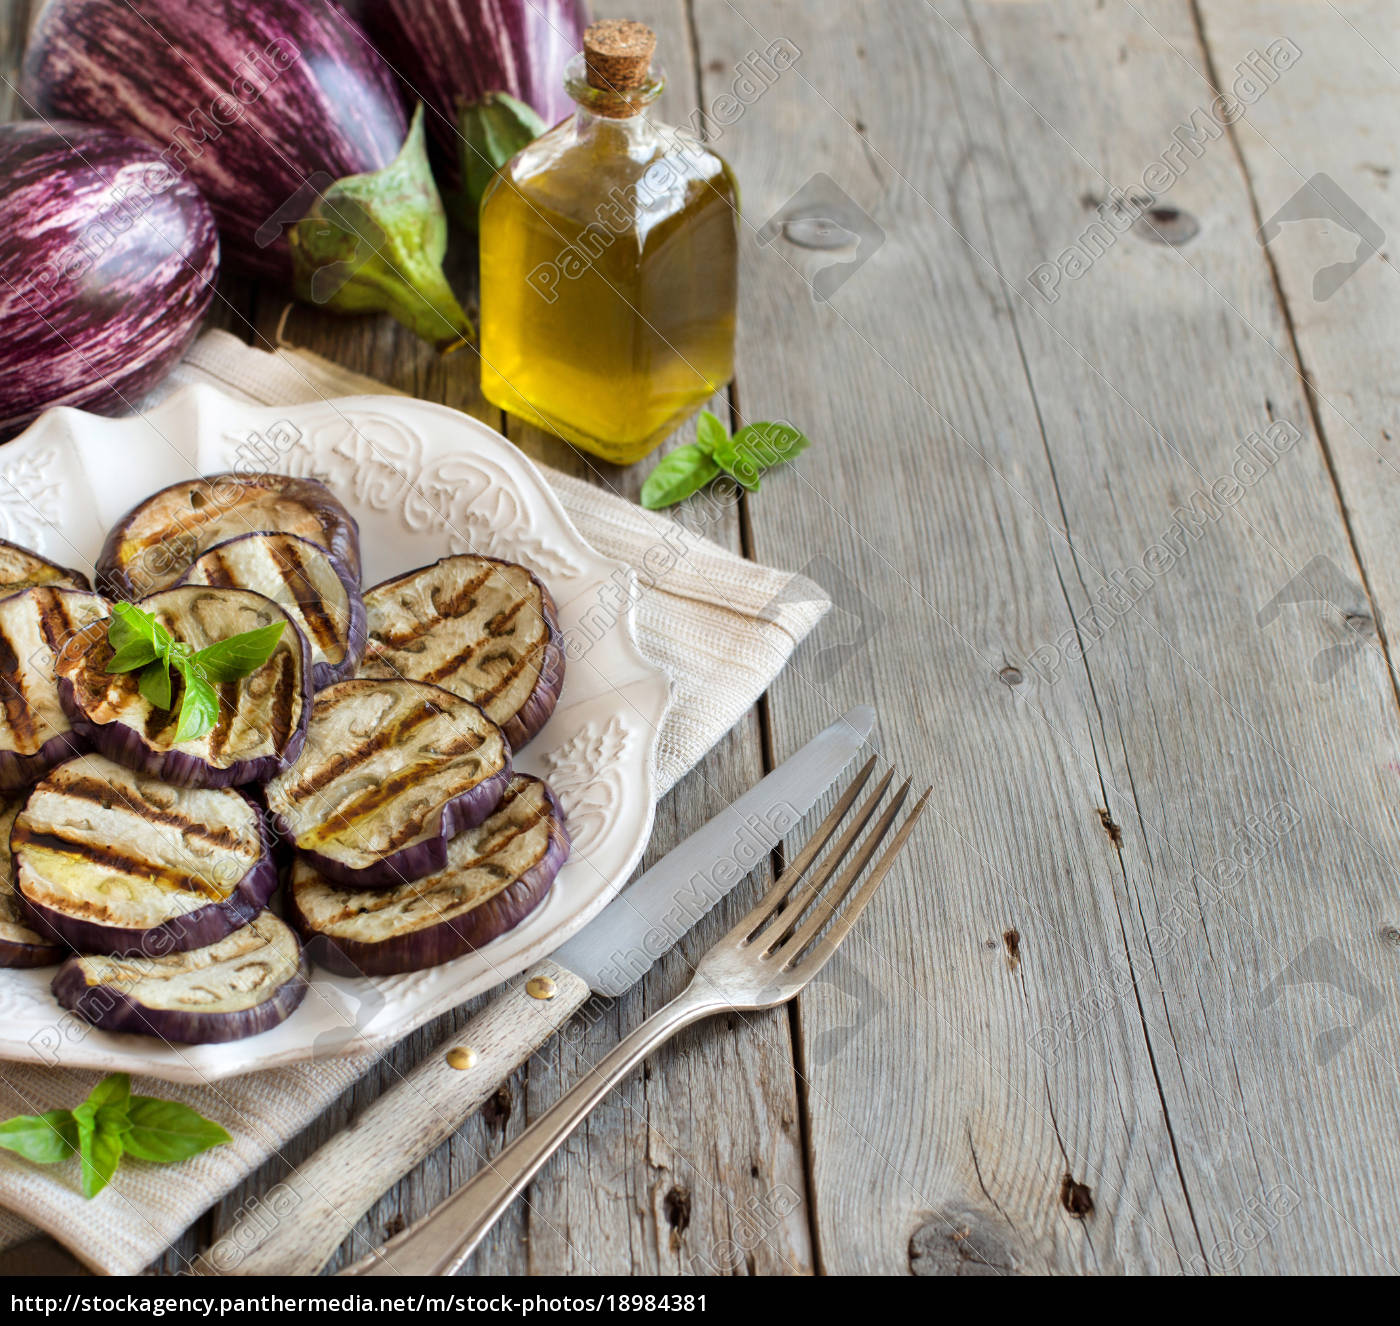 gegrillte auberginen mit olivenöl - Stockfoto - #18984381 | Bildagentur ...